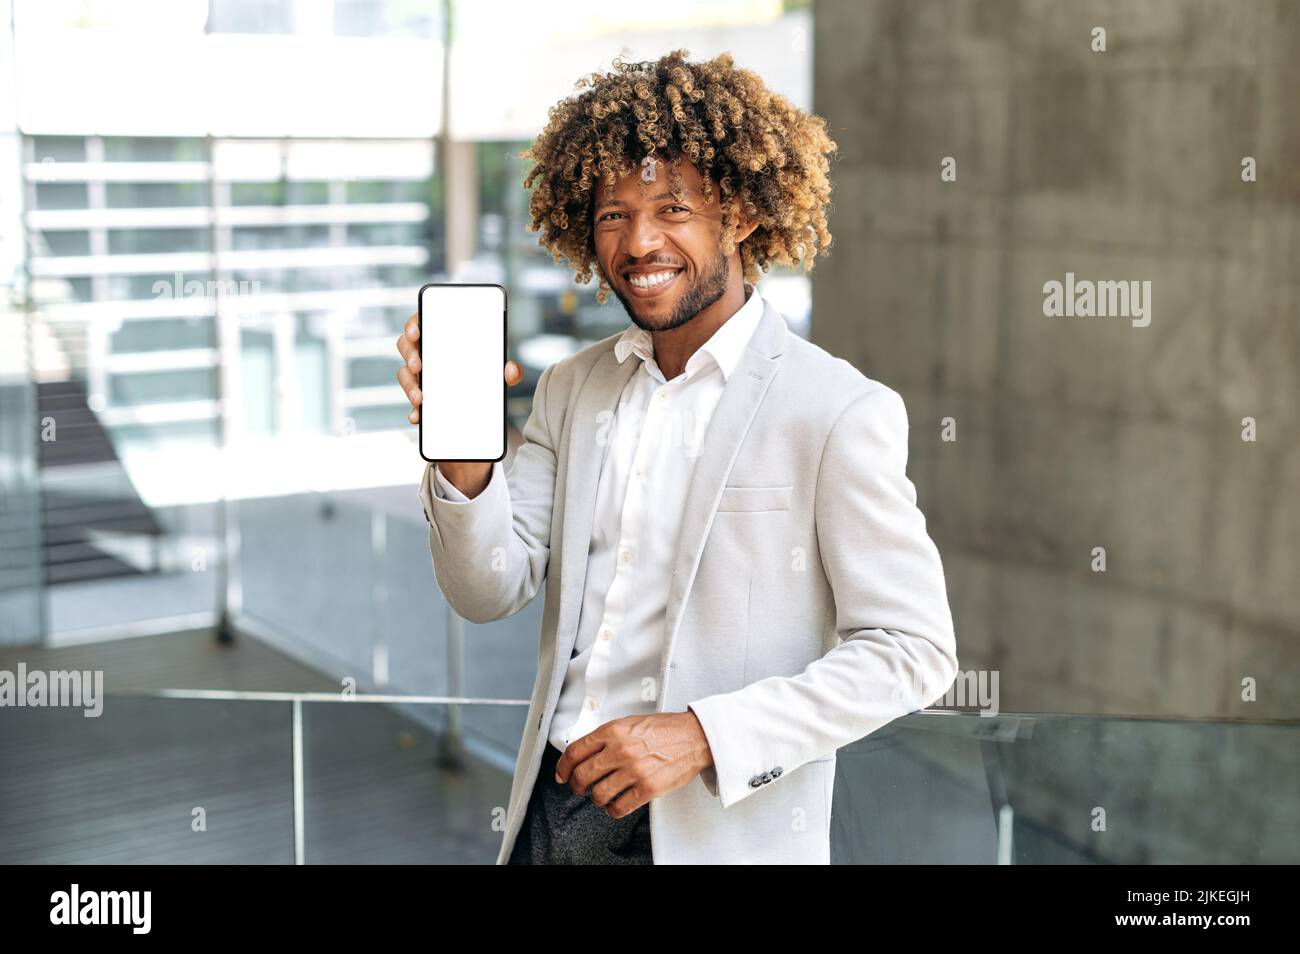 Erfolgreicher, freundlicher afroamerikanischer oder brasilianischer lockiger Mann, steht im Freien in stilvoller Kleidung, zeigt Smartphone mit weißem Mockup-Bildschirm, Platz für Werbung, schaut auf die Kamera, lächelt Stockfoto